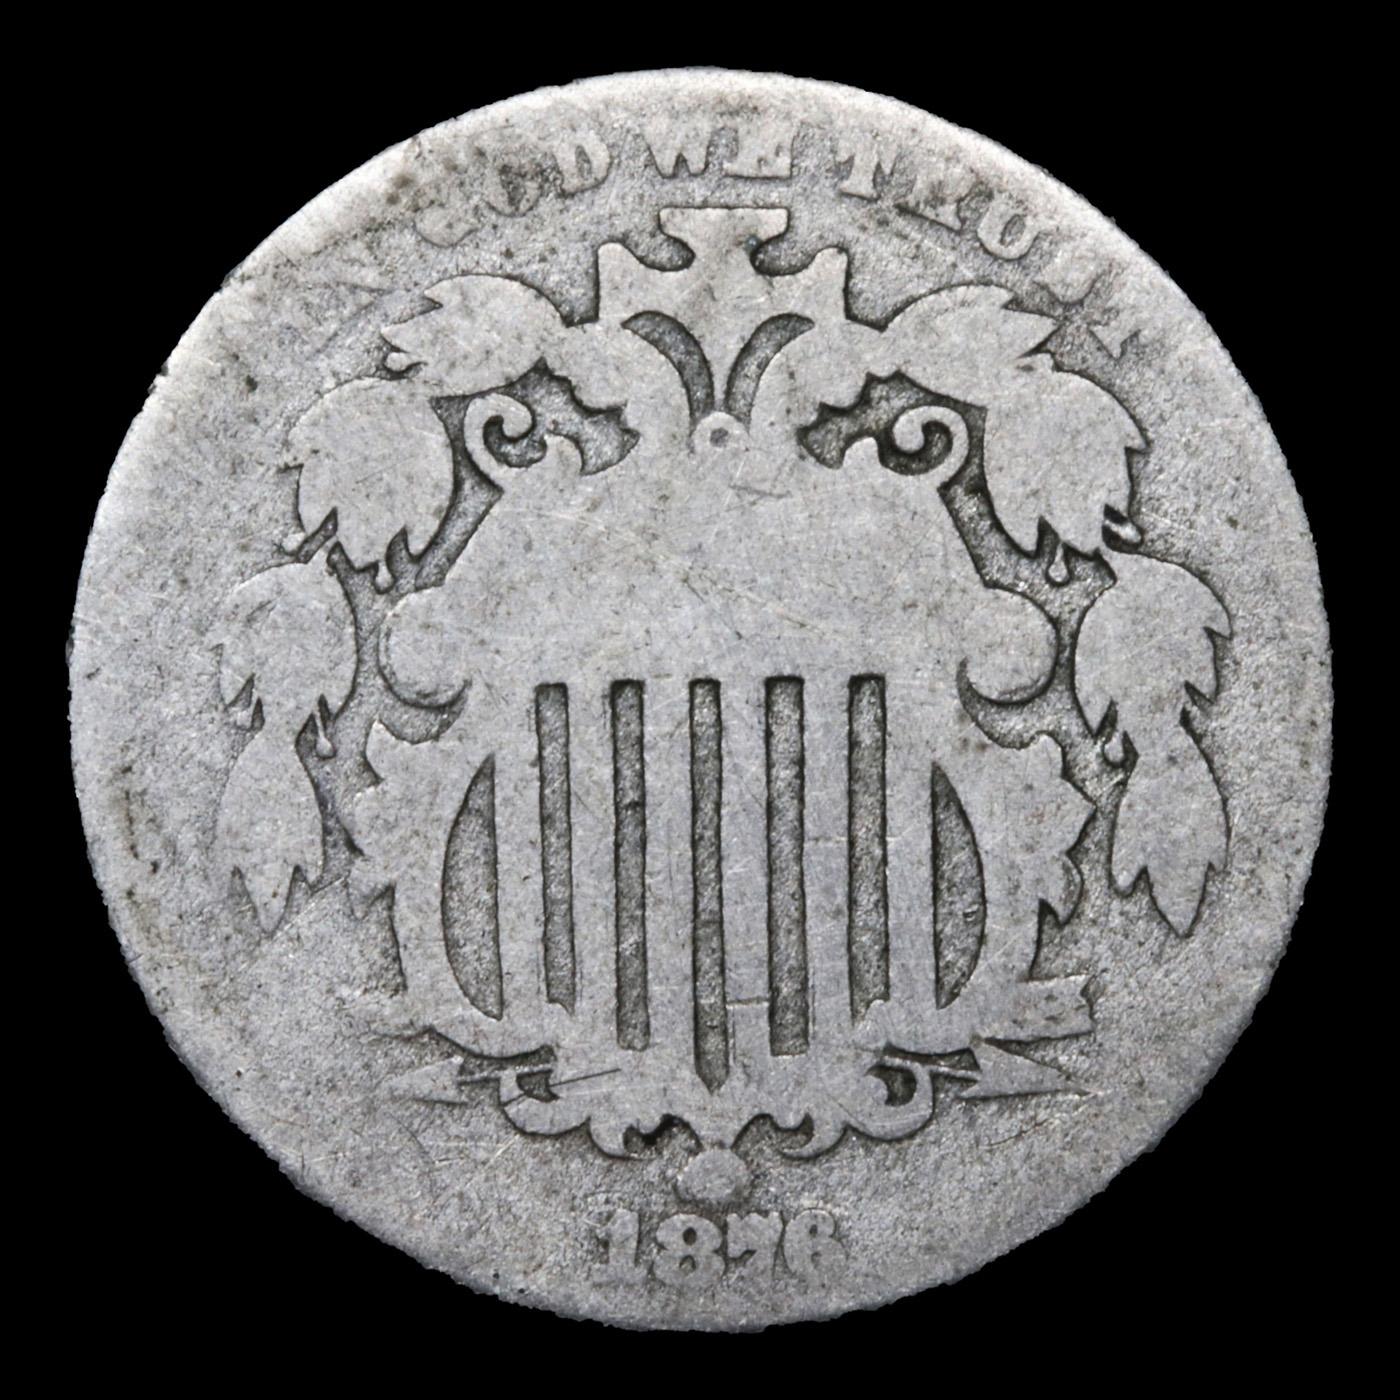 1876 Shield Nickel 5c Grades g+